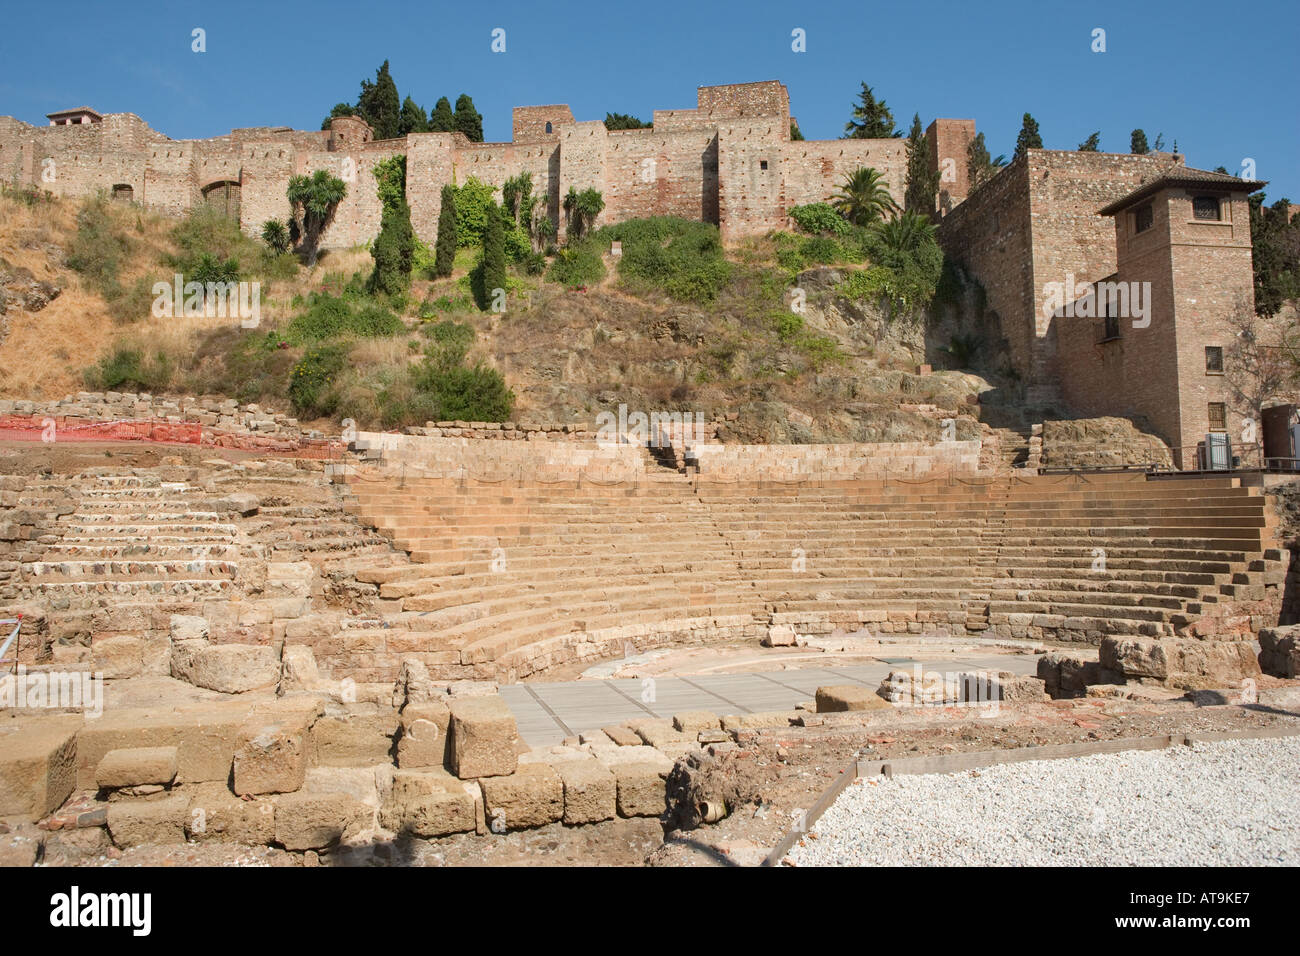 Malaga Costa del Sol Andalusia Spain Roman theatre beneath walls of Moorish castle. Stock Photo